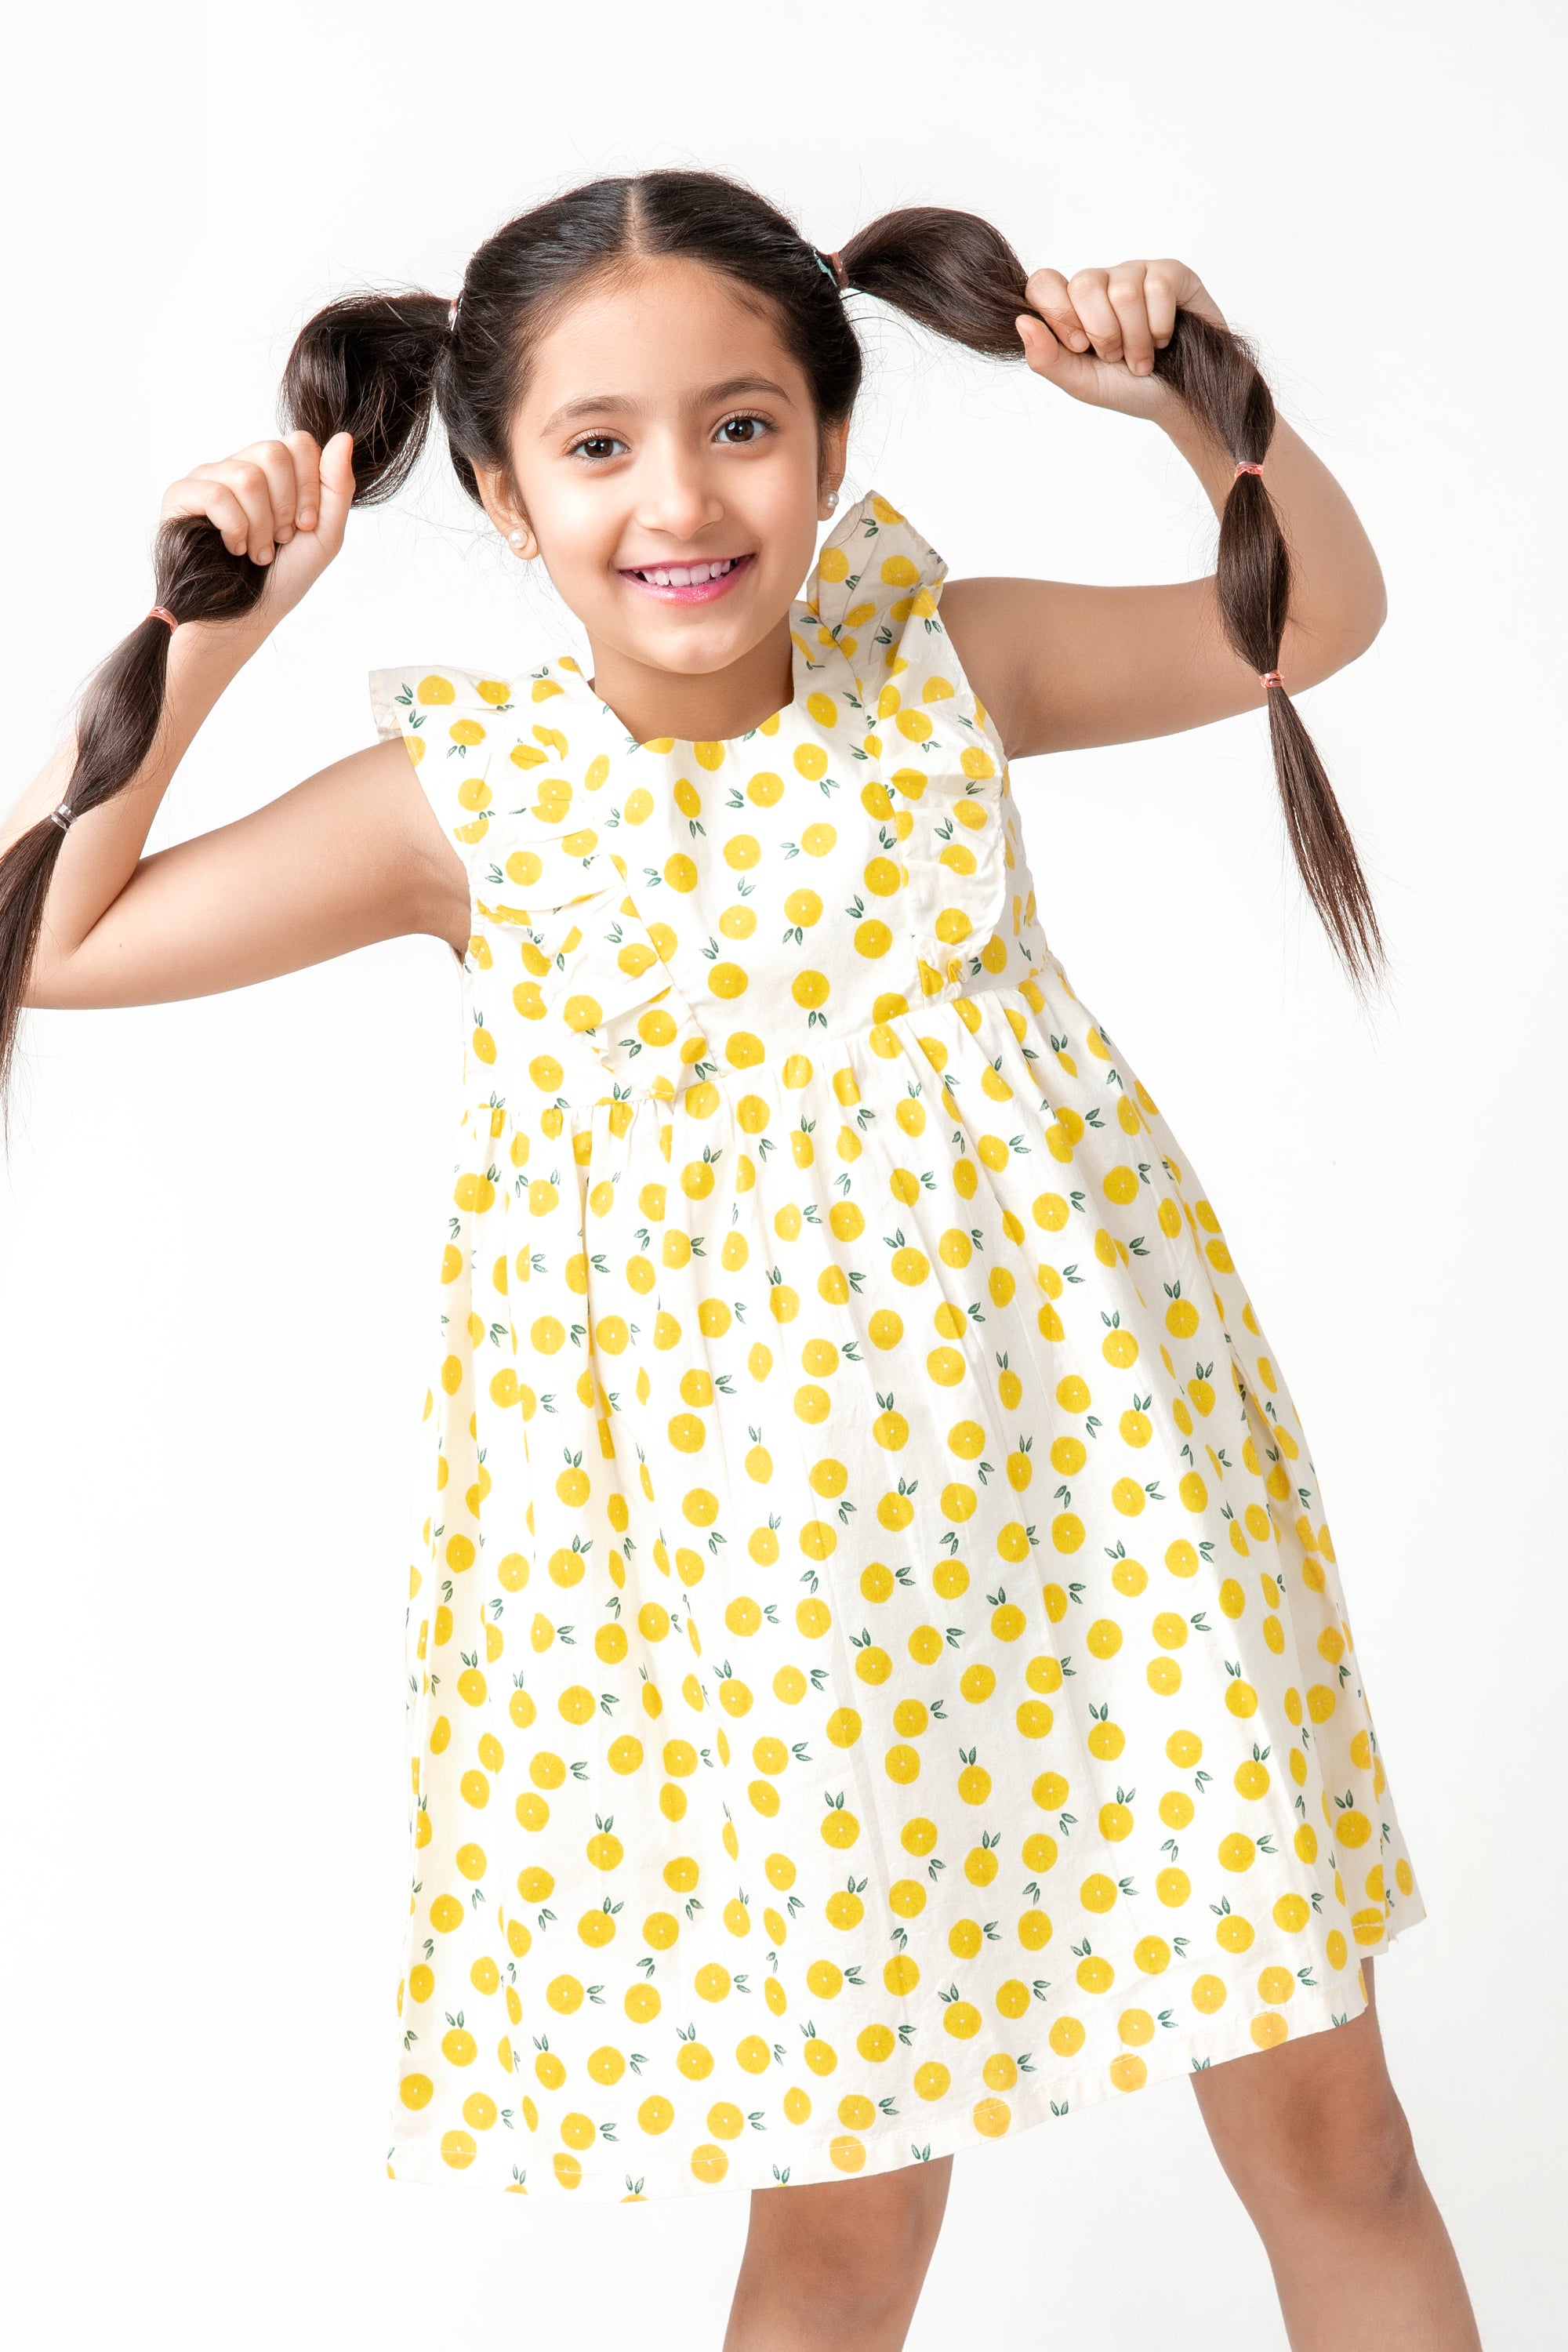 All-over Lemon Printed Summer Dress